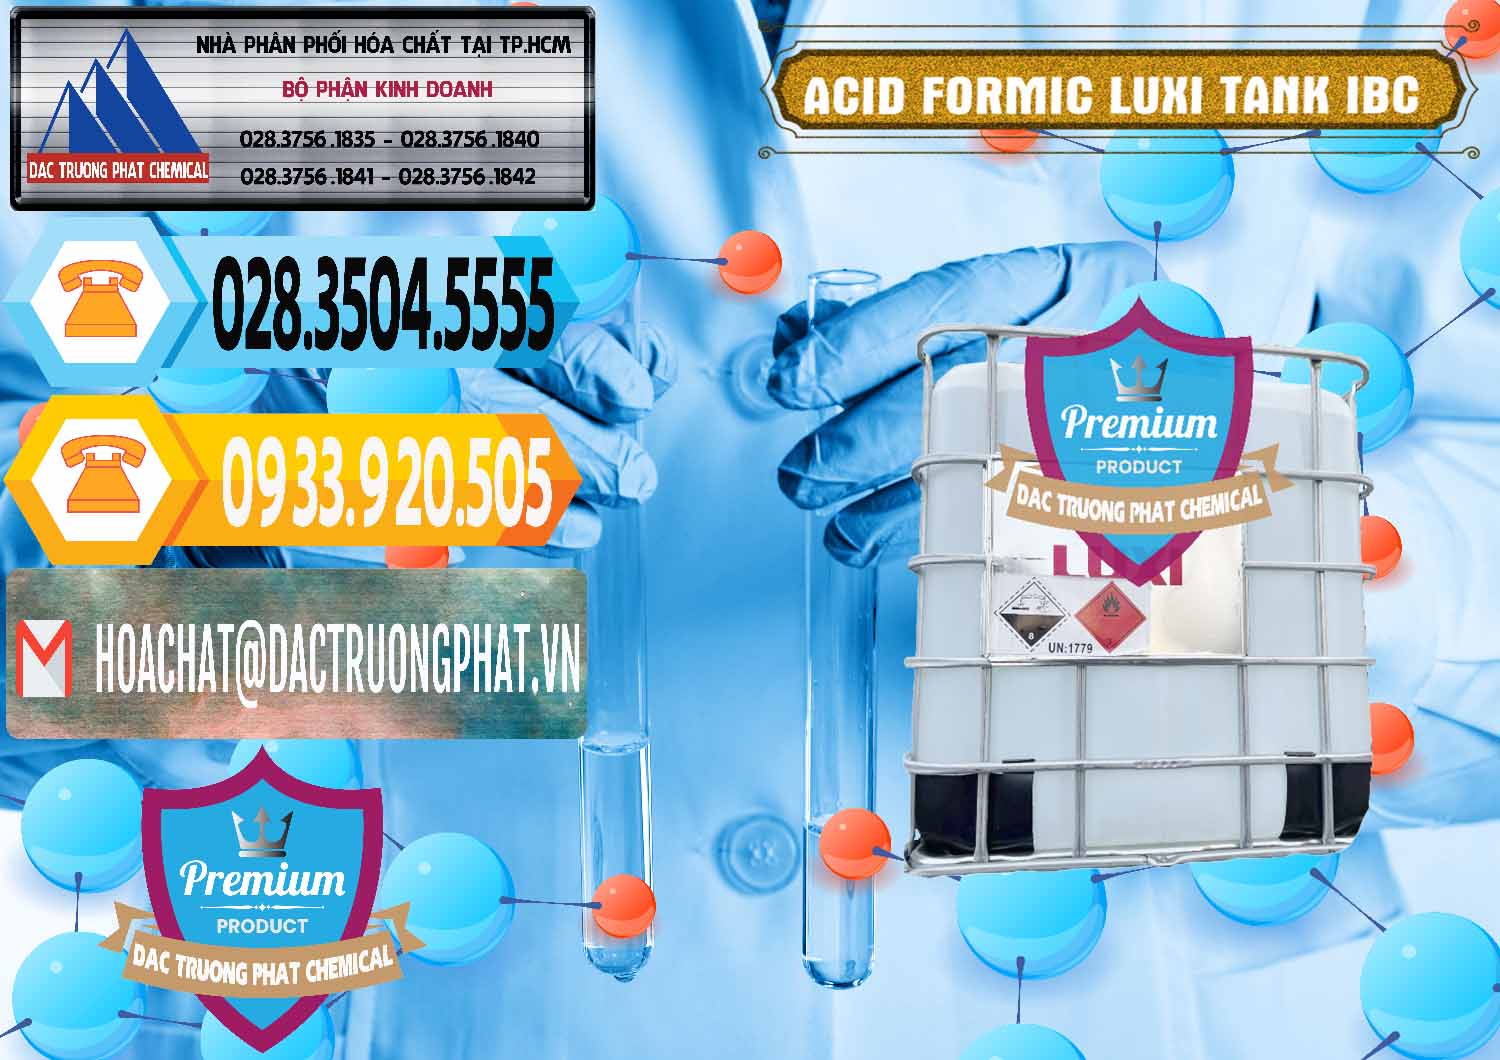 Đơn vị chuyên bán & phân phối Acid Formic - Acid Formic Tank - Bồn IBC Luxi Trung Quốc China - 0400 - Chuyên phân phối và nhập khẩu hóa chất tại TP.HCM - hoachattayrua.net